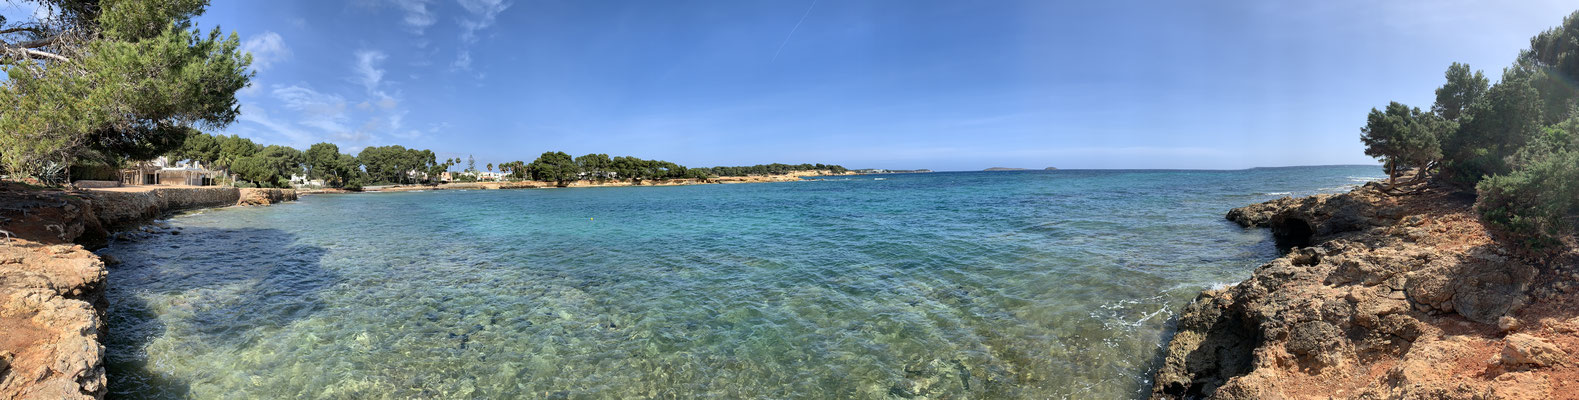 Uitzicht op zee, Babylonstrand, Ibiza